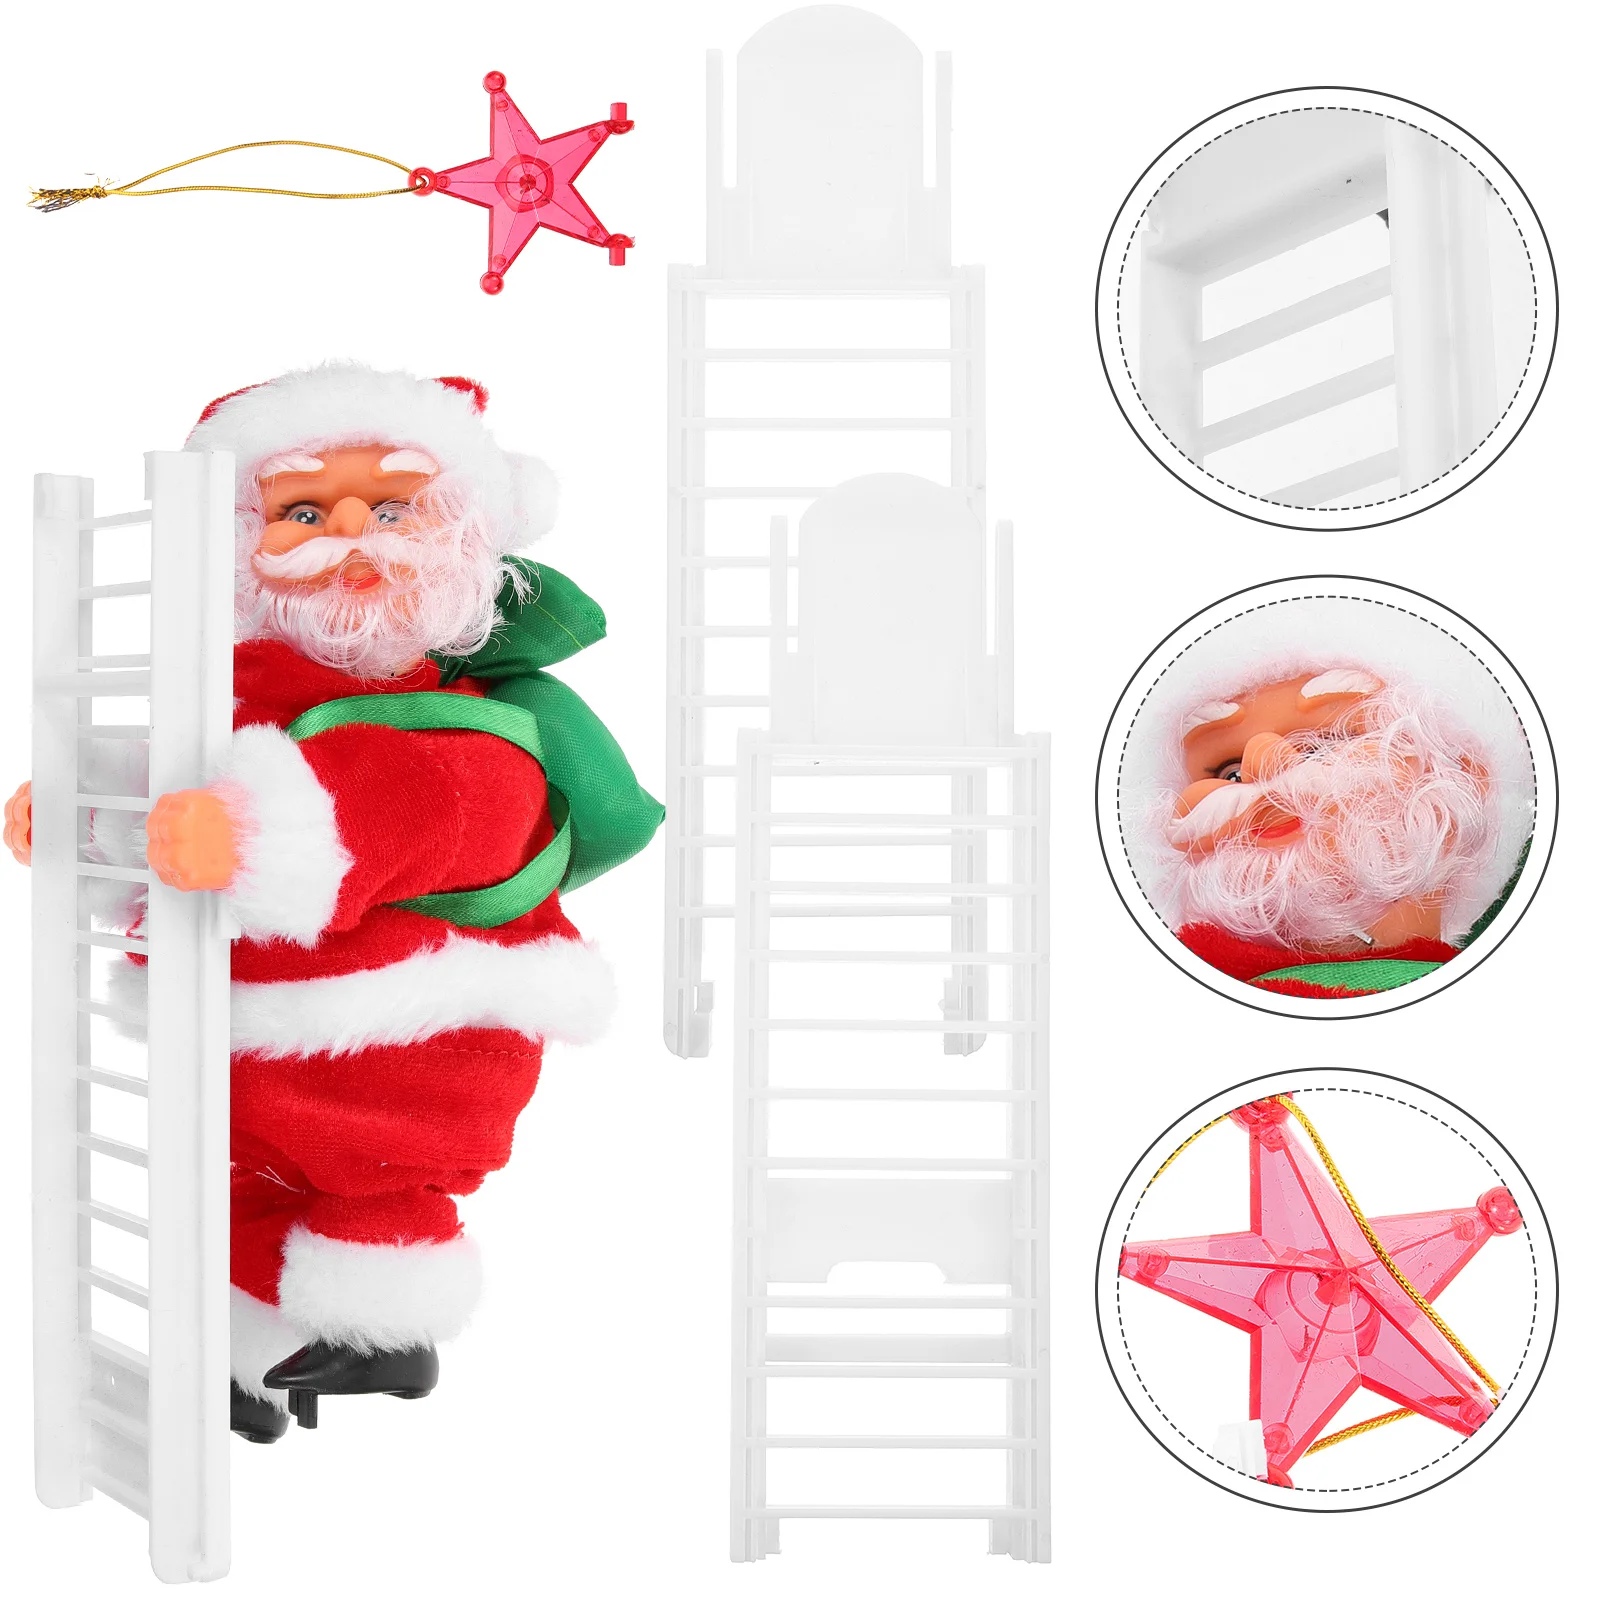 

Подъем по лестнице Санта-Клаус старший ребенок рождественские подарки Музыка старик ткань фотореквизит